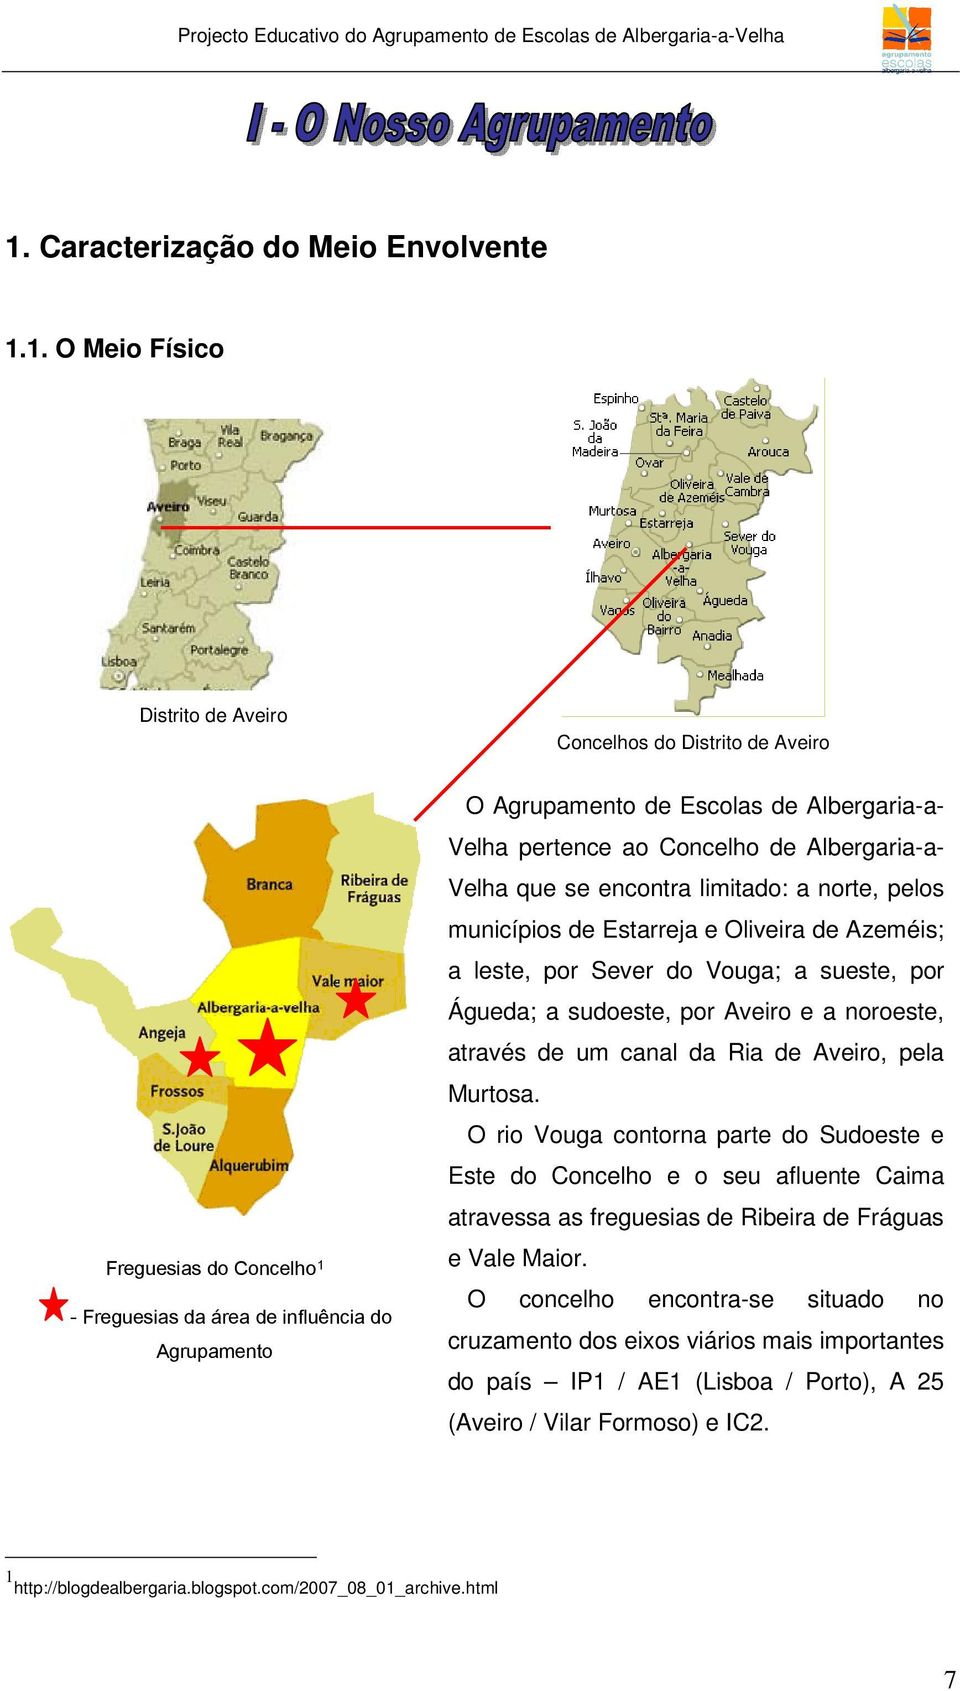 sueste, por Águeda; a sudoeste, por Aveiro e a noroeste, através de um canal da Ria de Aveiro, pela Murtosa.